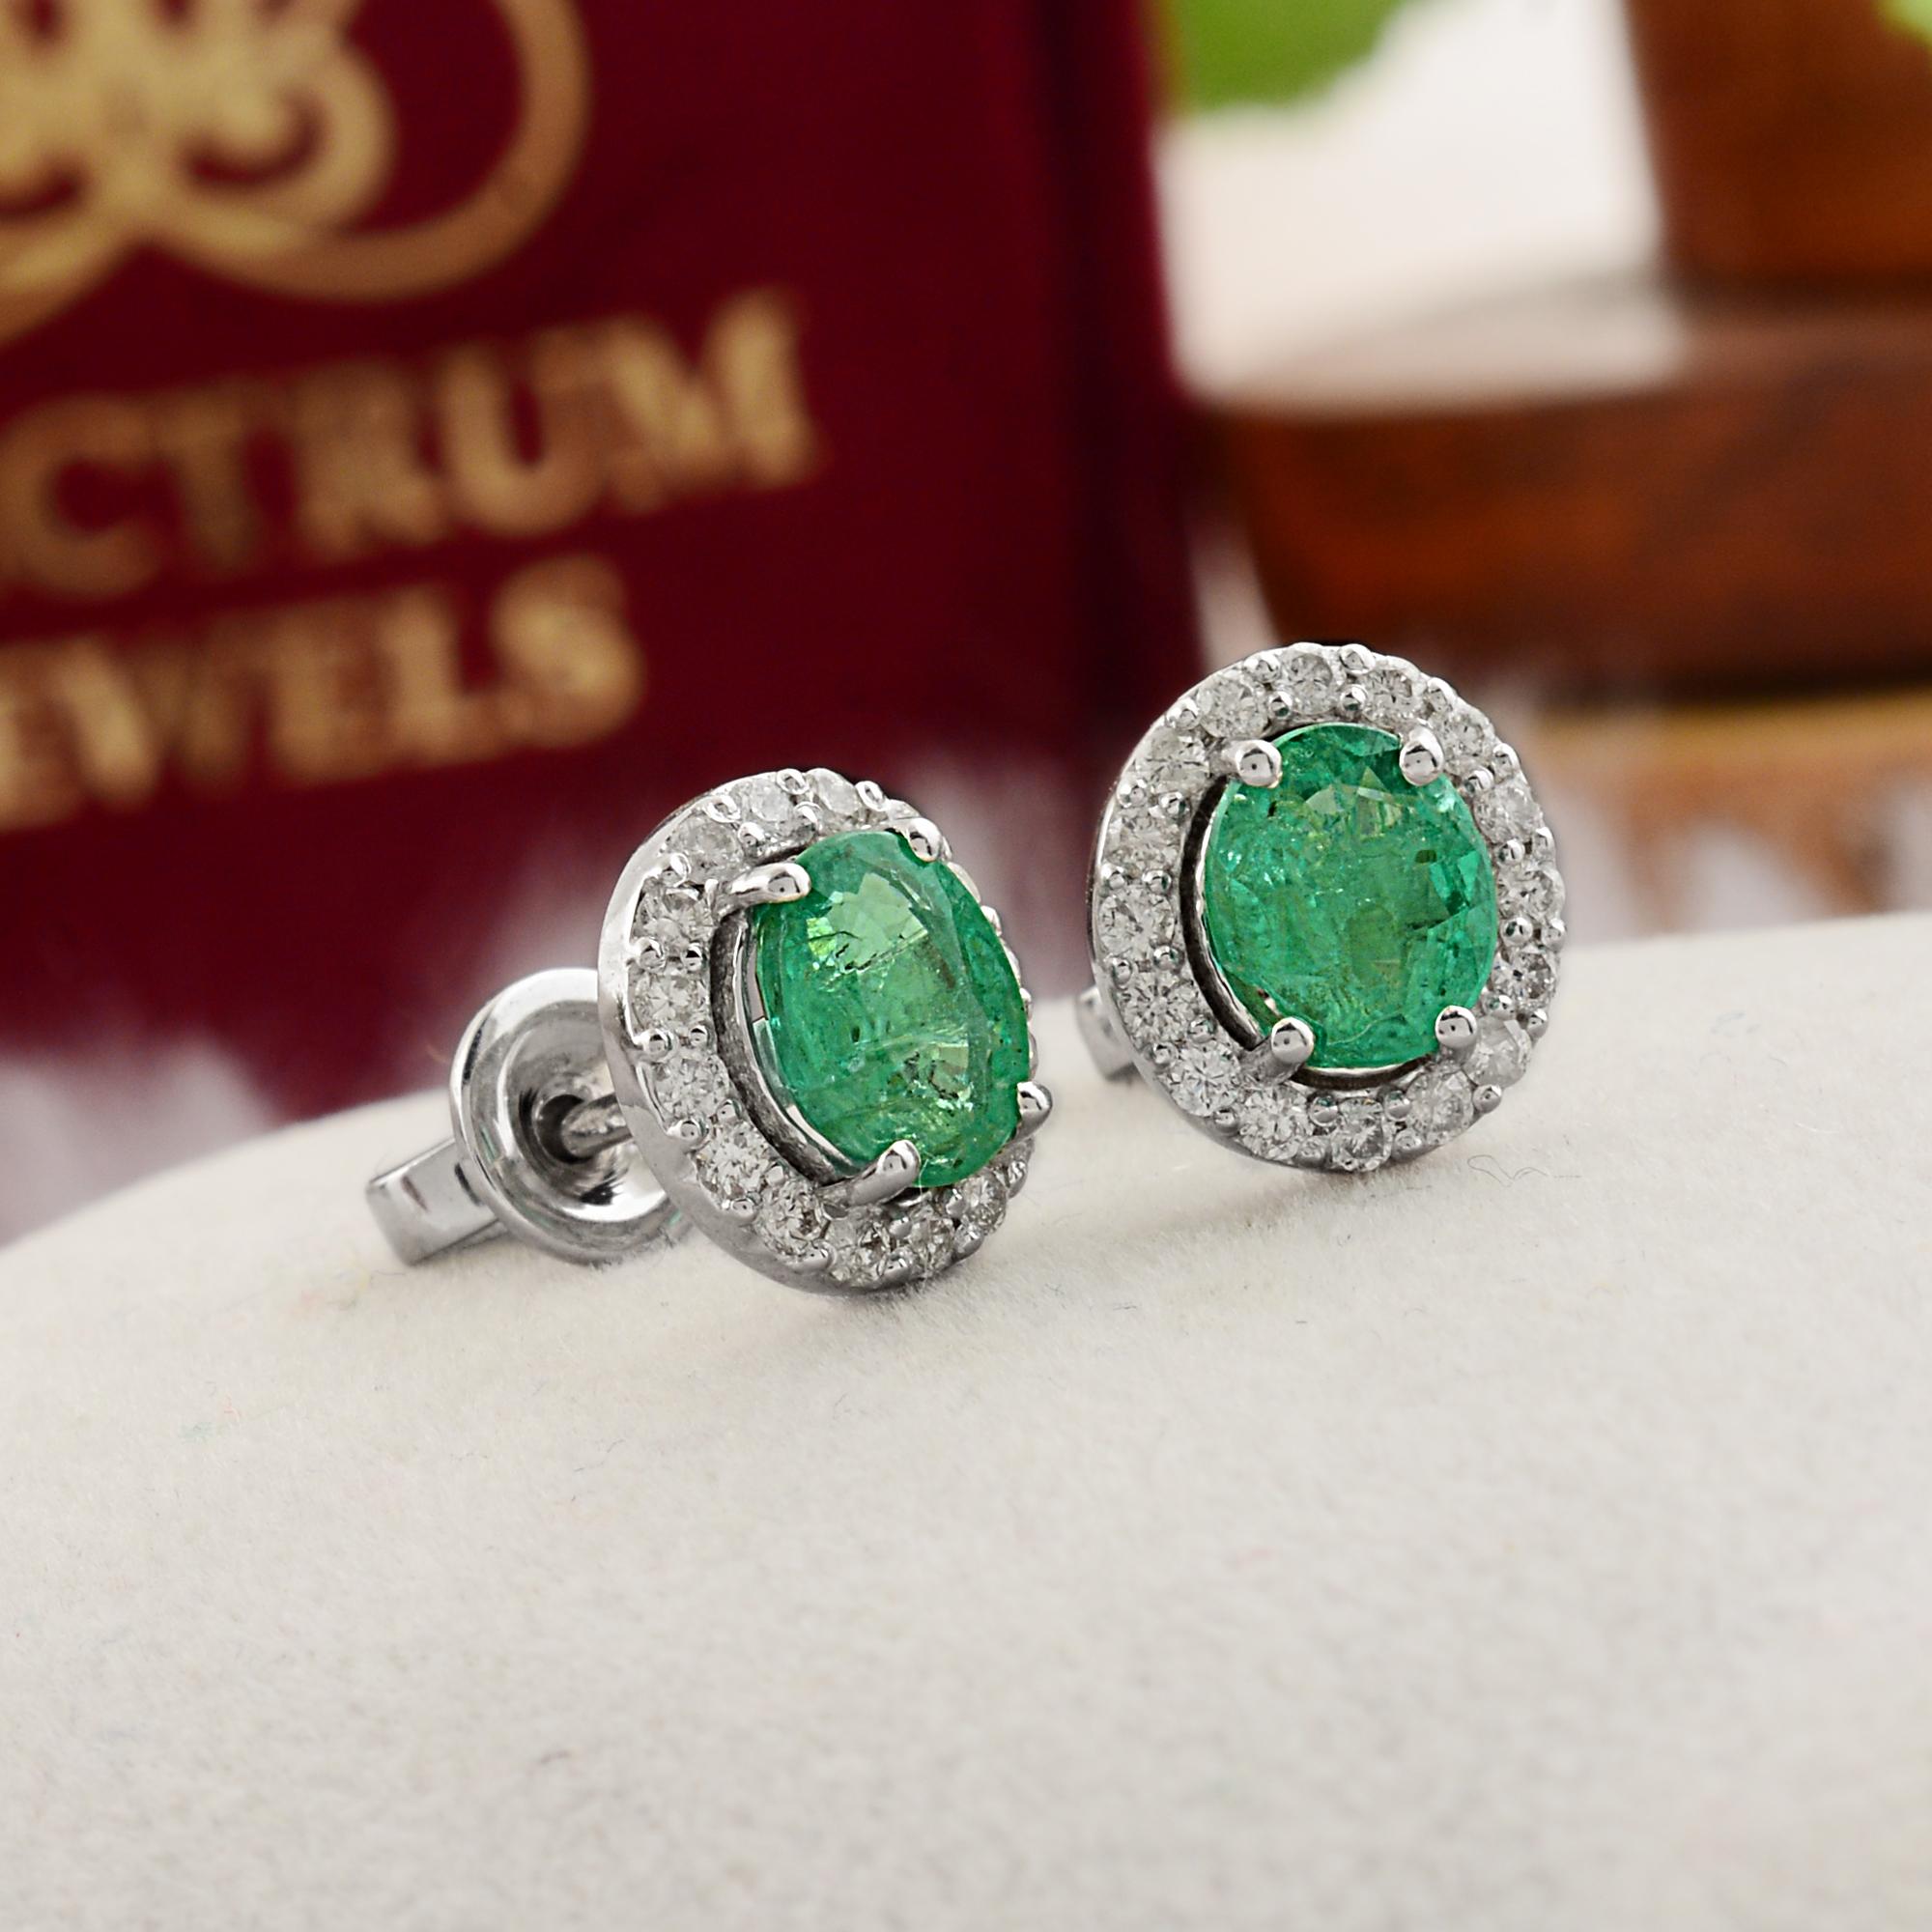 Oval Cut Oval Shape Emerald Gemstone Stud Earrings Diamond 10 Karat White Gold Jewelry For Sale